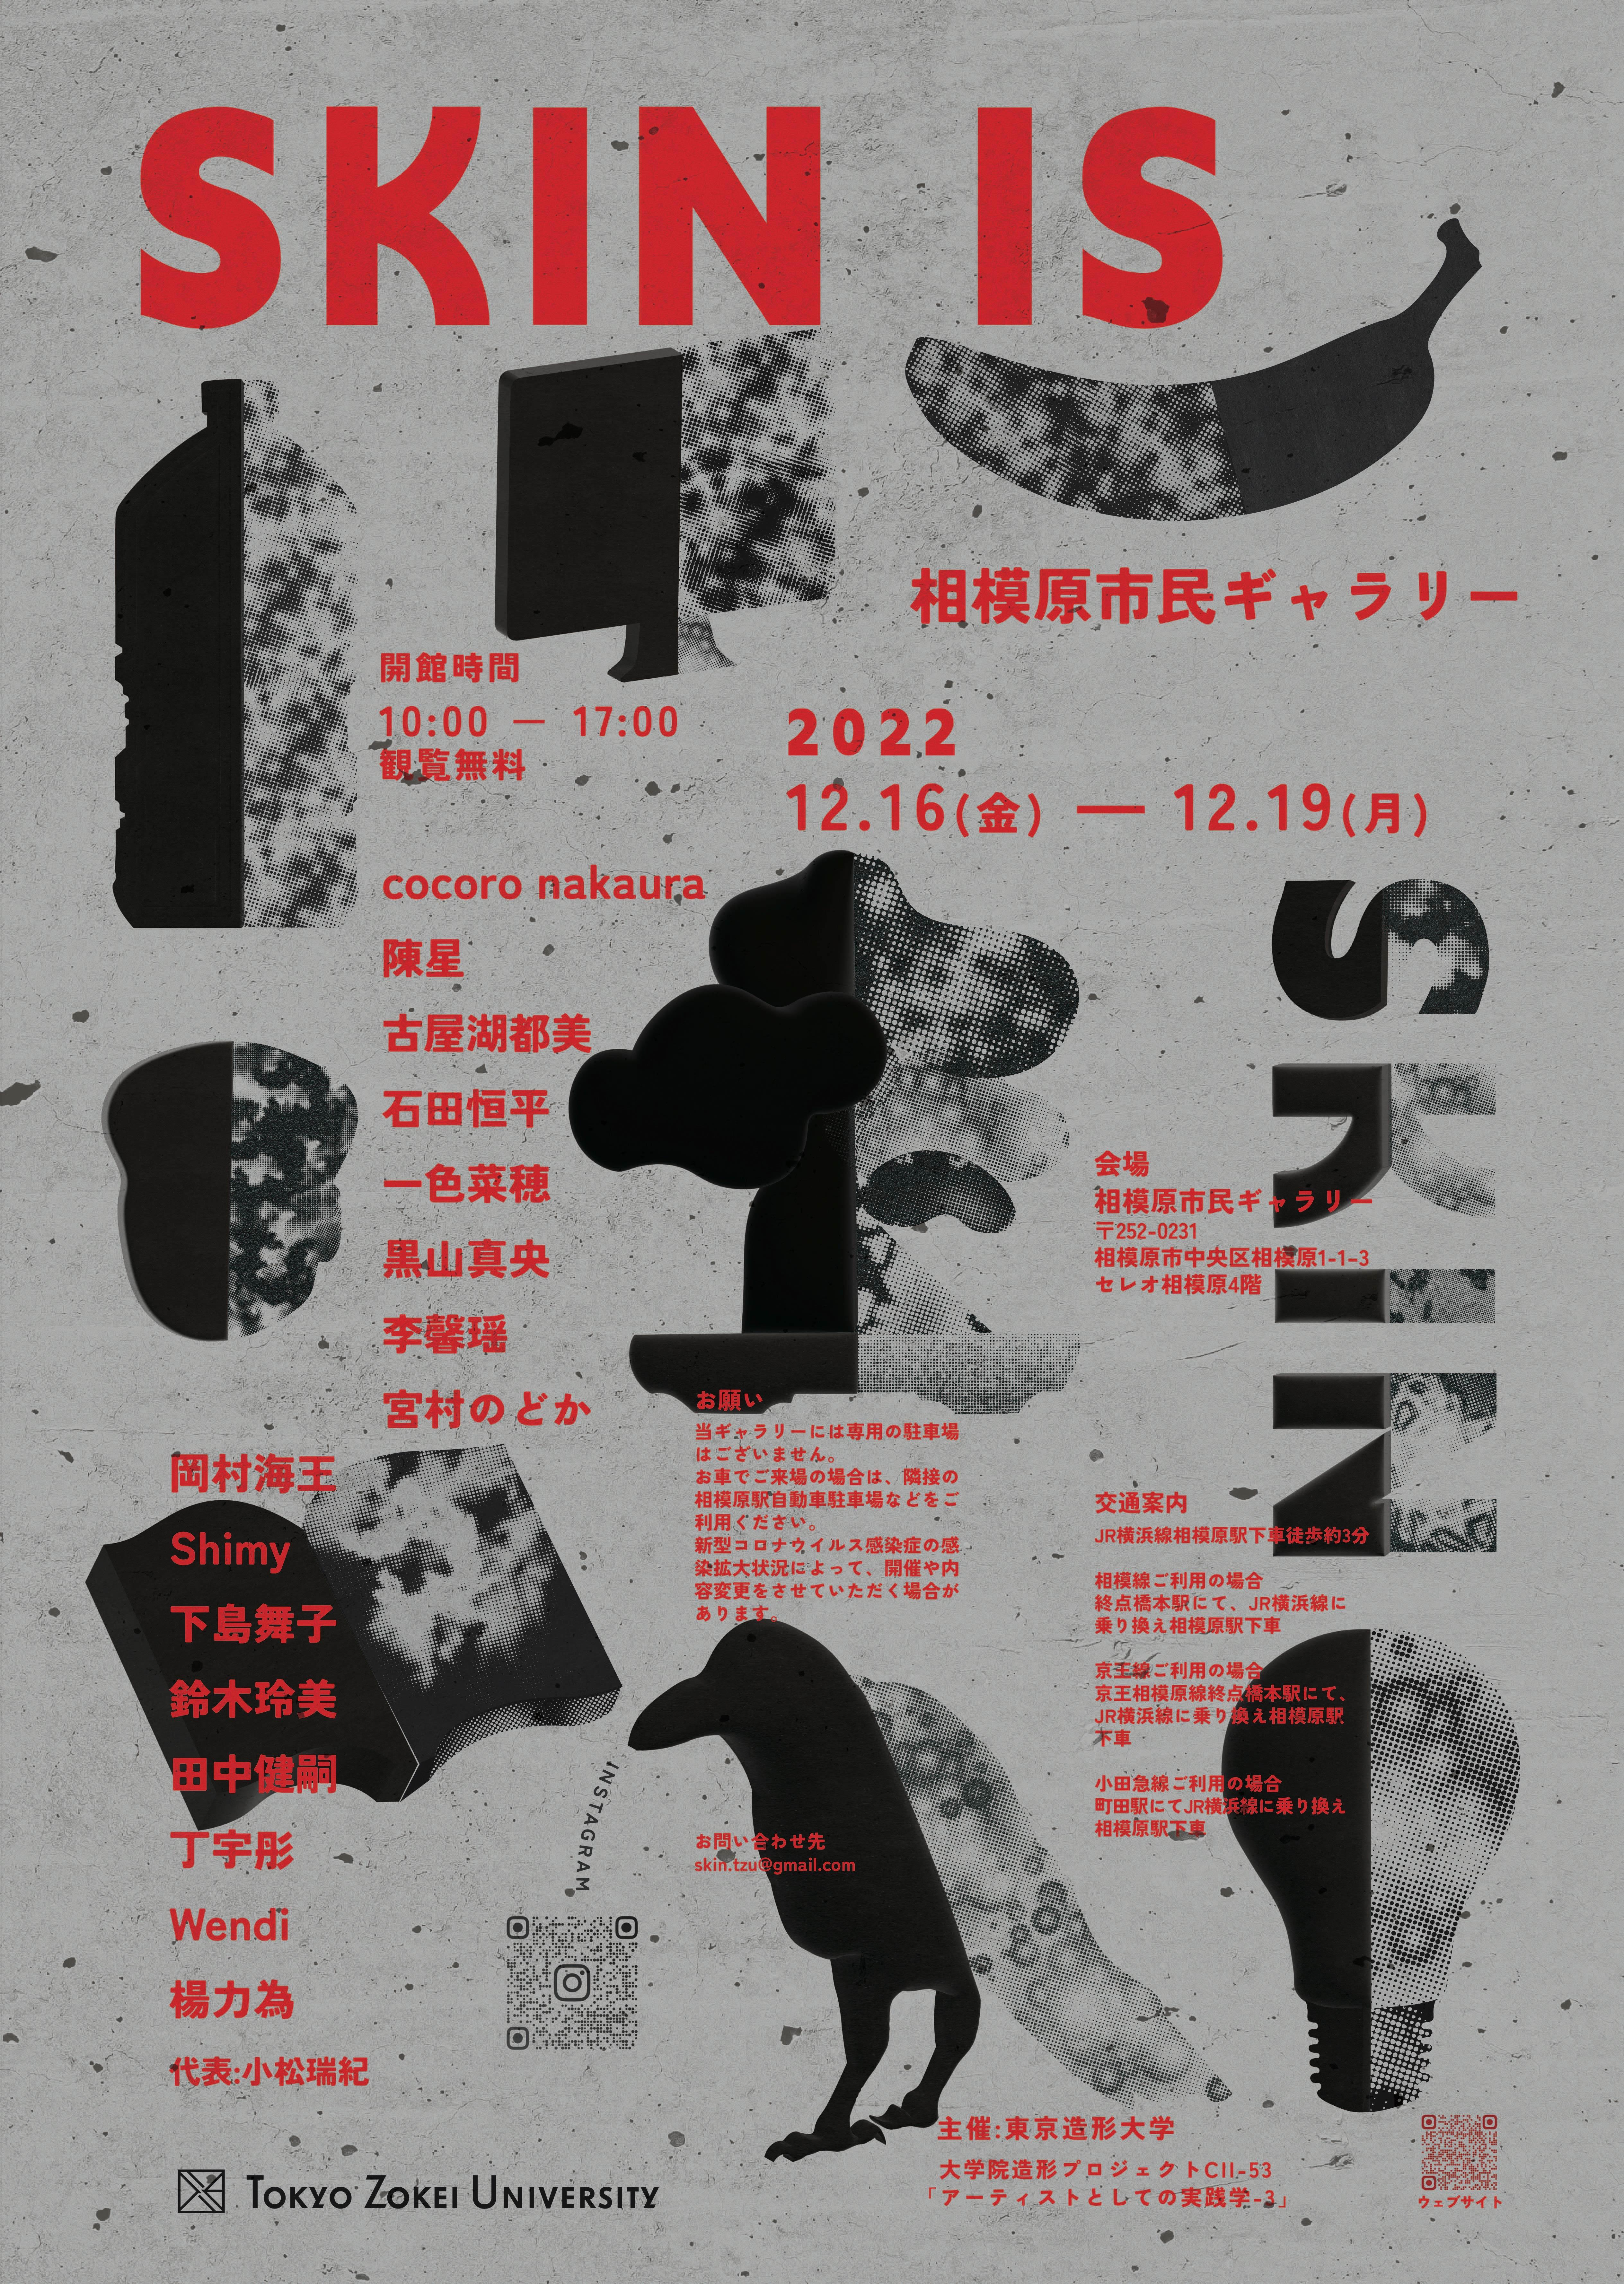 東京造形大学大学院 企画展「SKIN IS」相模原市民ギャラリーで12月16日より開催 -- デザイン、絵画、彫刻と異なる素地を持つ学生たちによる、授業1年間の集大成としての展示